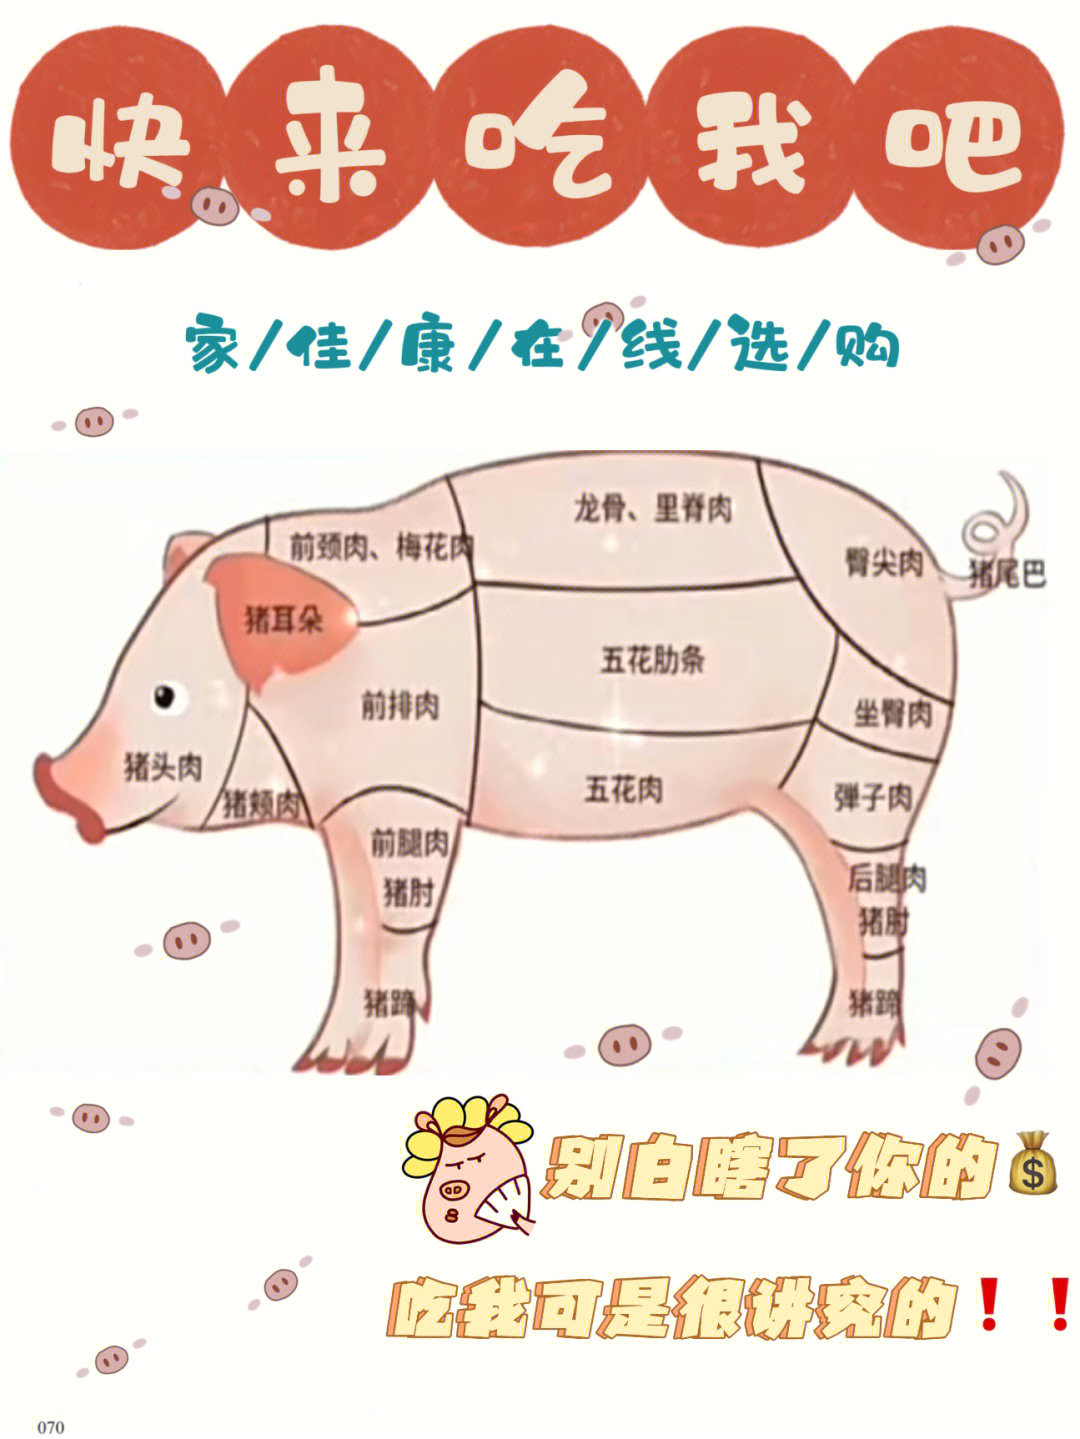 猪肉分布图及烹饪方法图片